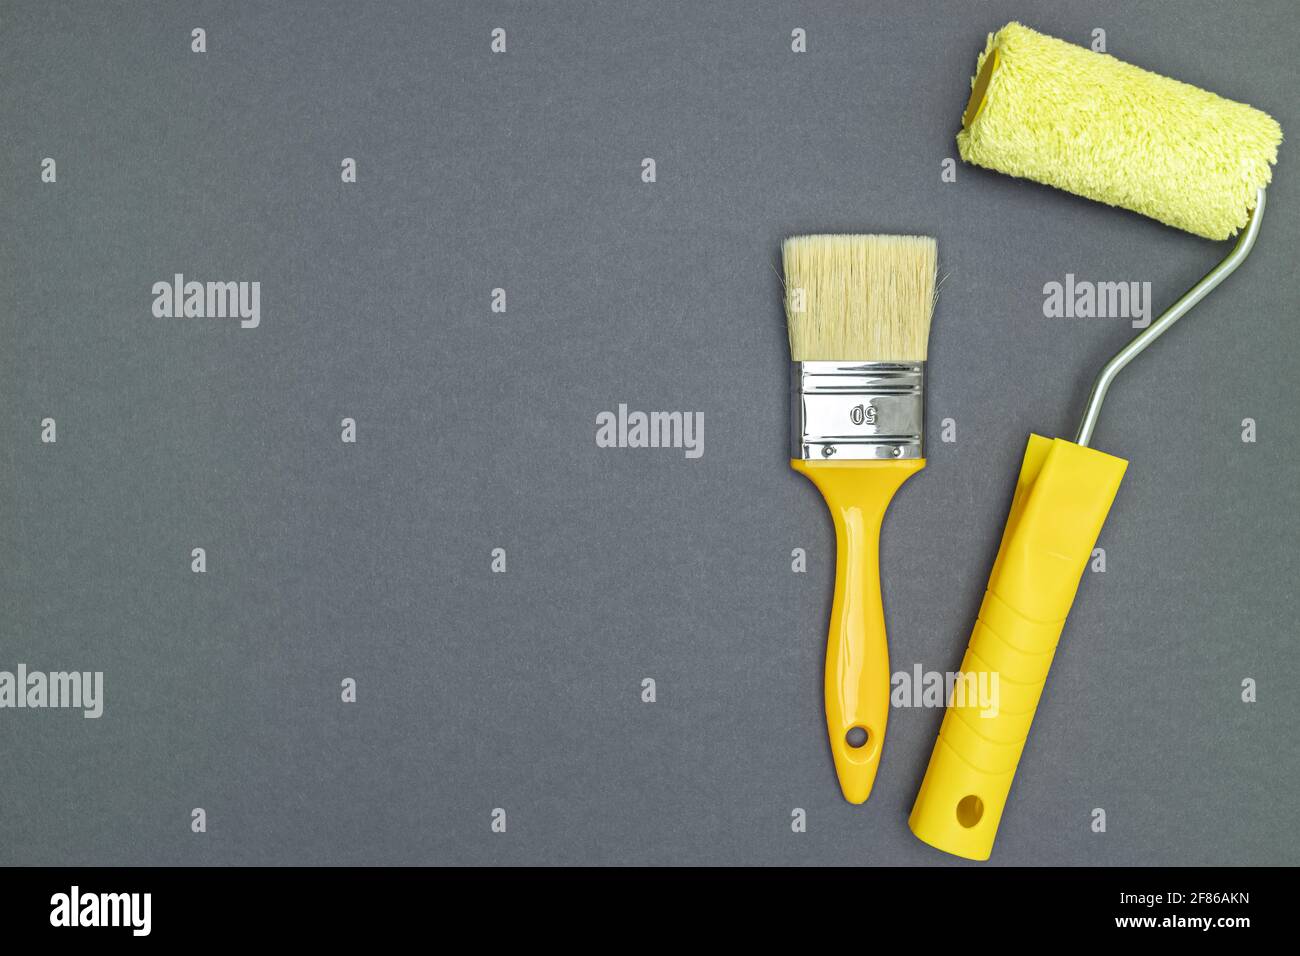 Malwerkzeuge für Hausrenovierungen - Pinsel und Farbe Rolle auf grauem Hintergrund Stockfoto